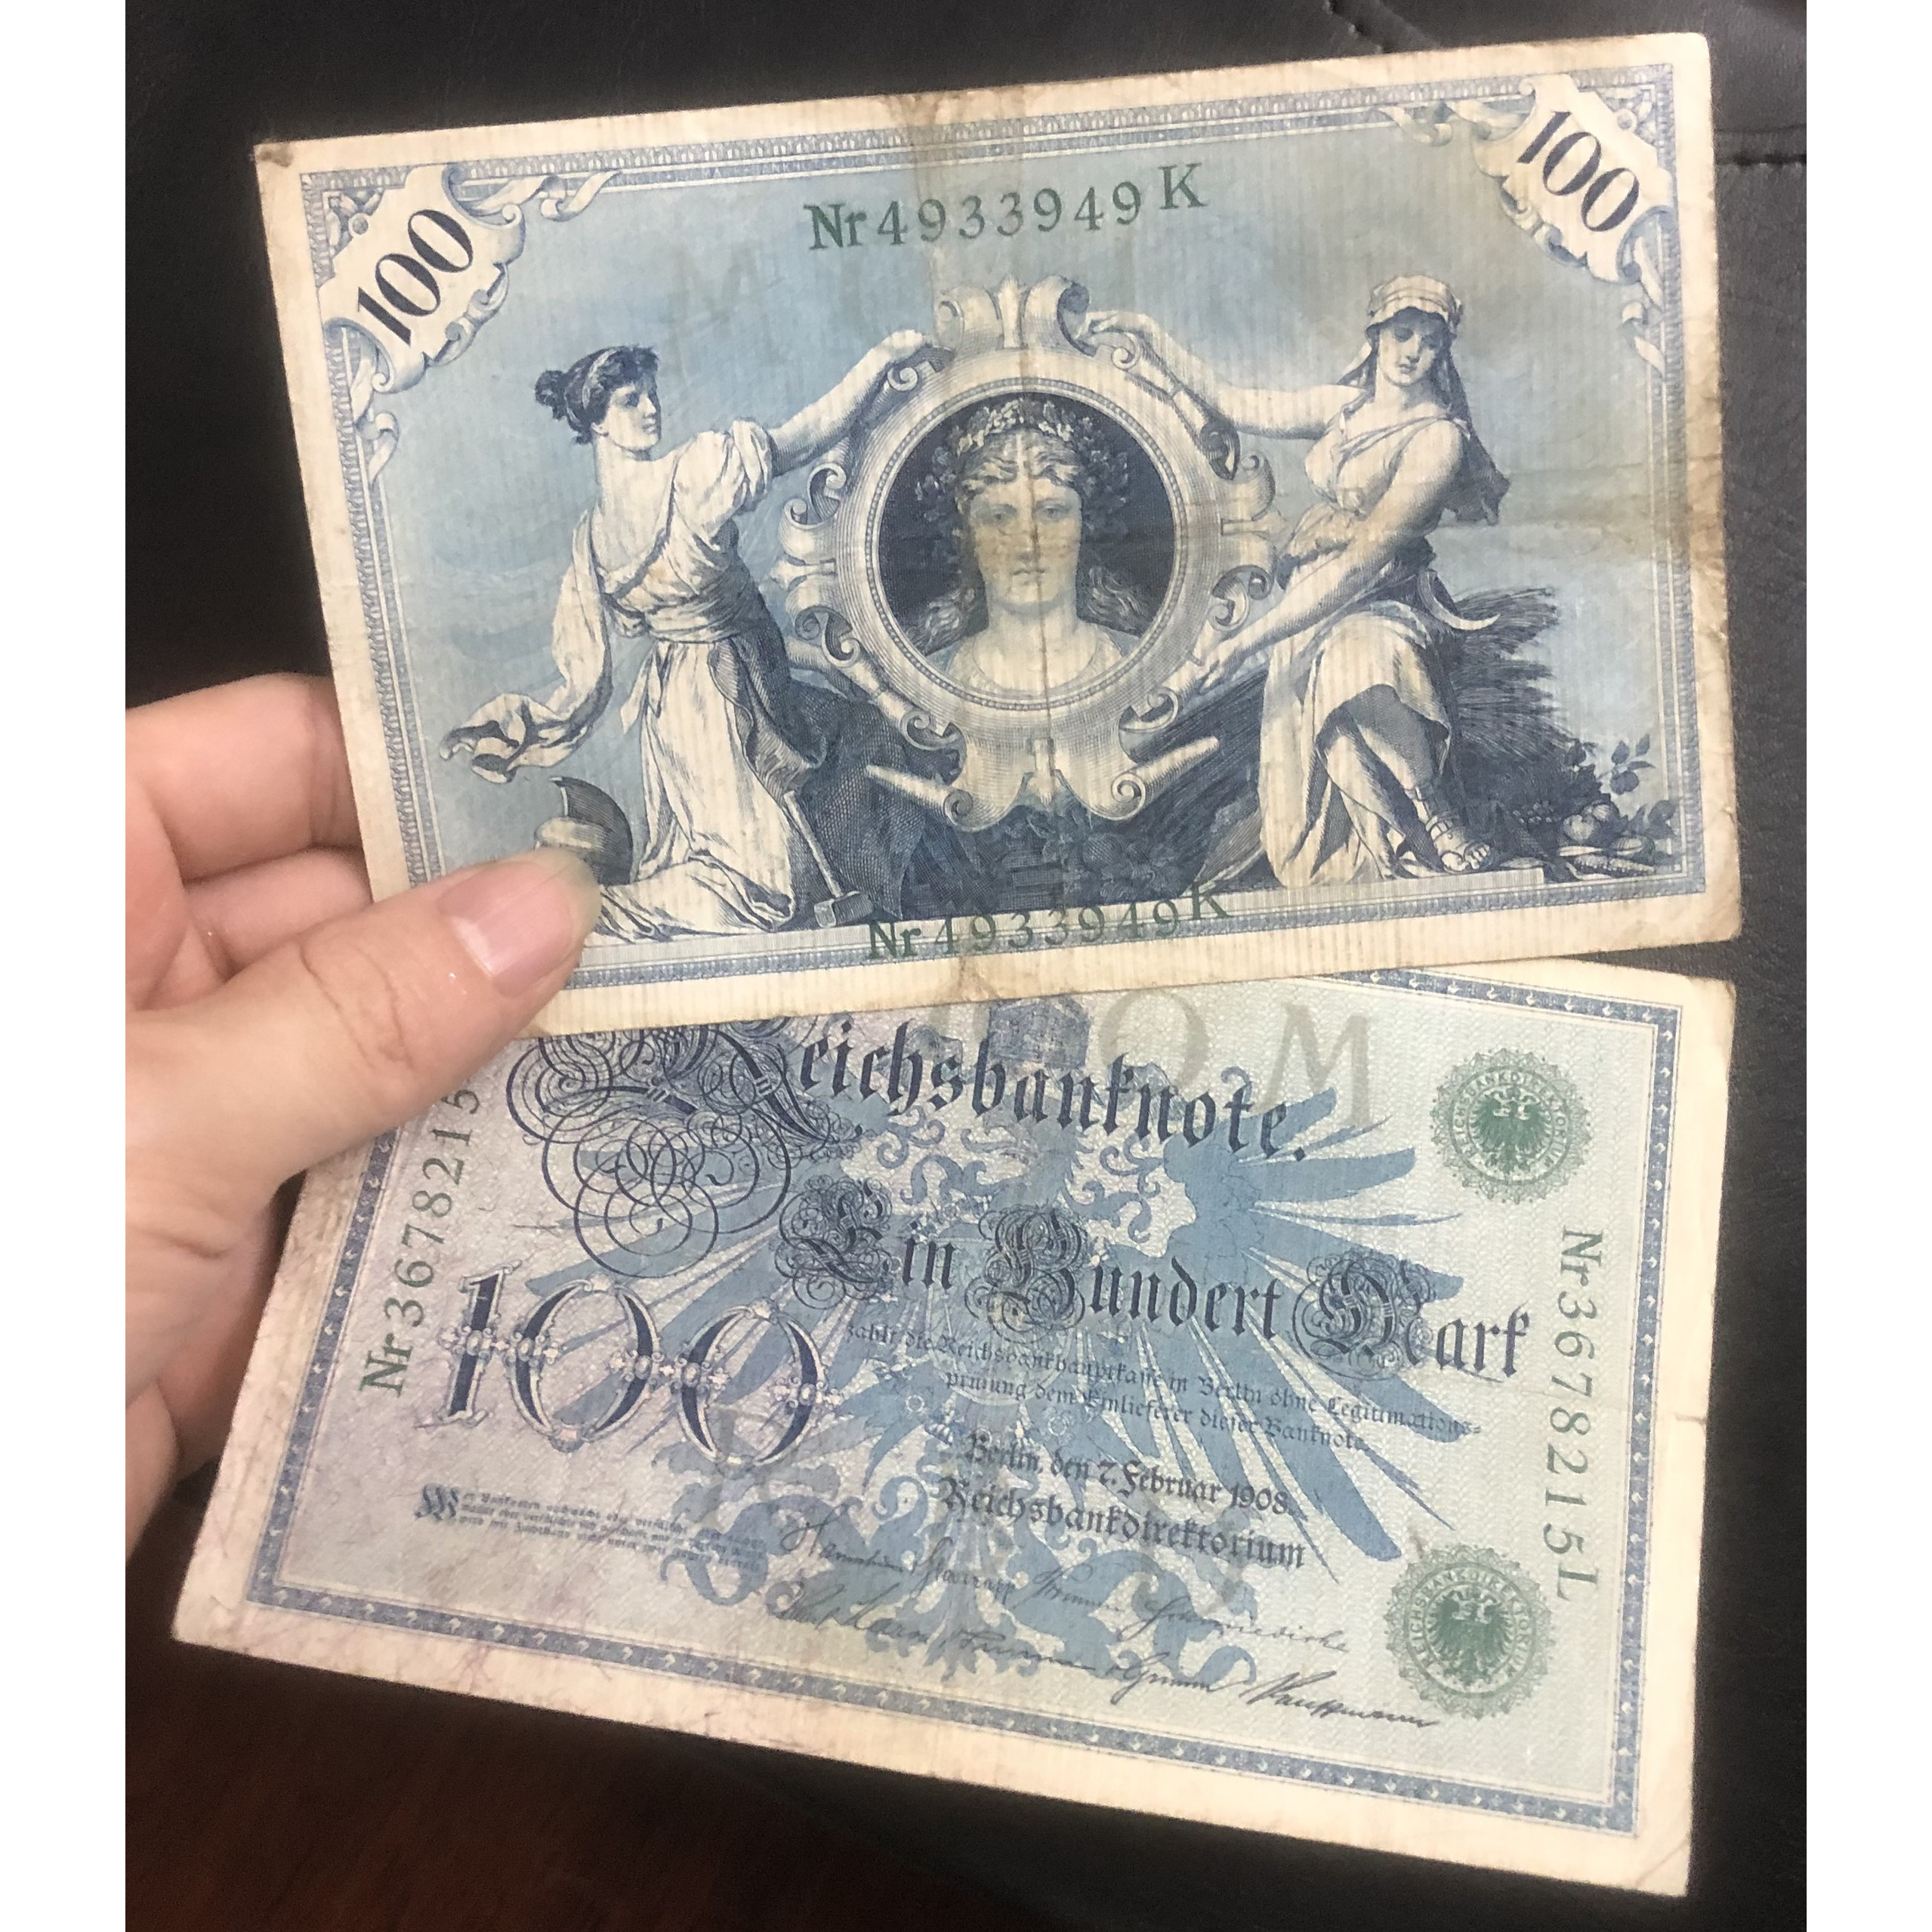 Tiền Đức 100 Mark 1908 hơn 100 năm tuổi, đậm chất châu ÂU